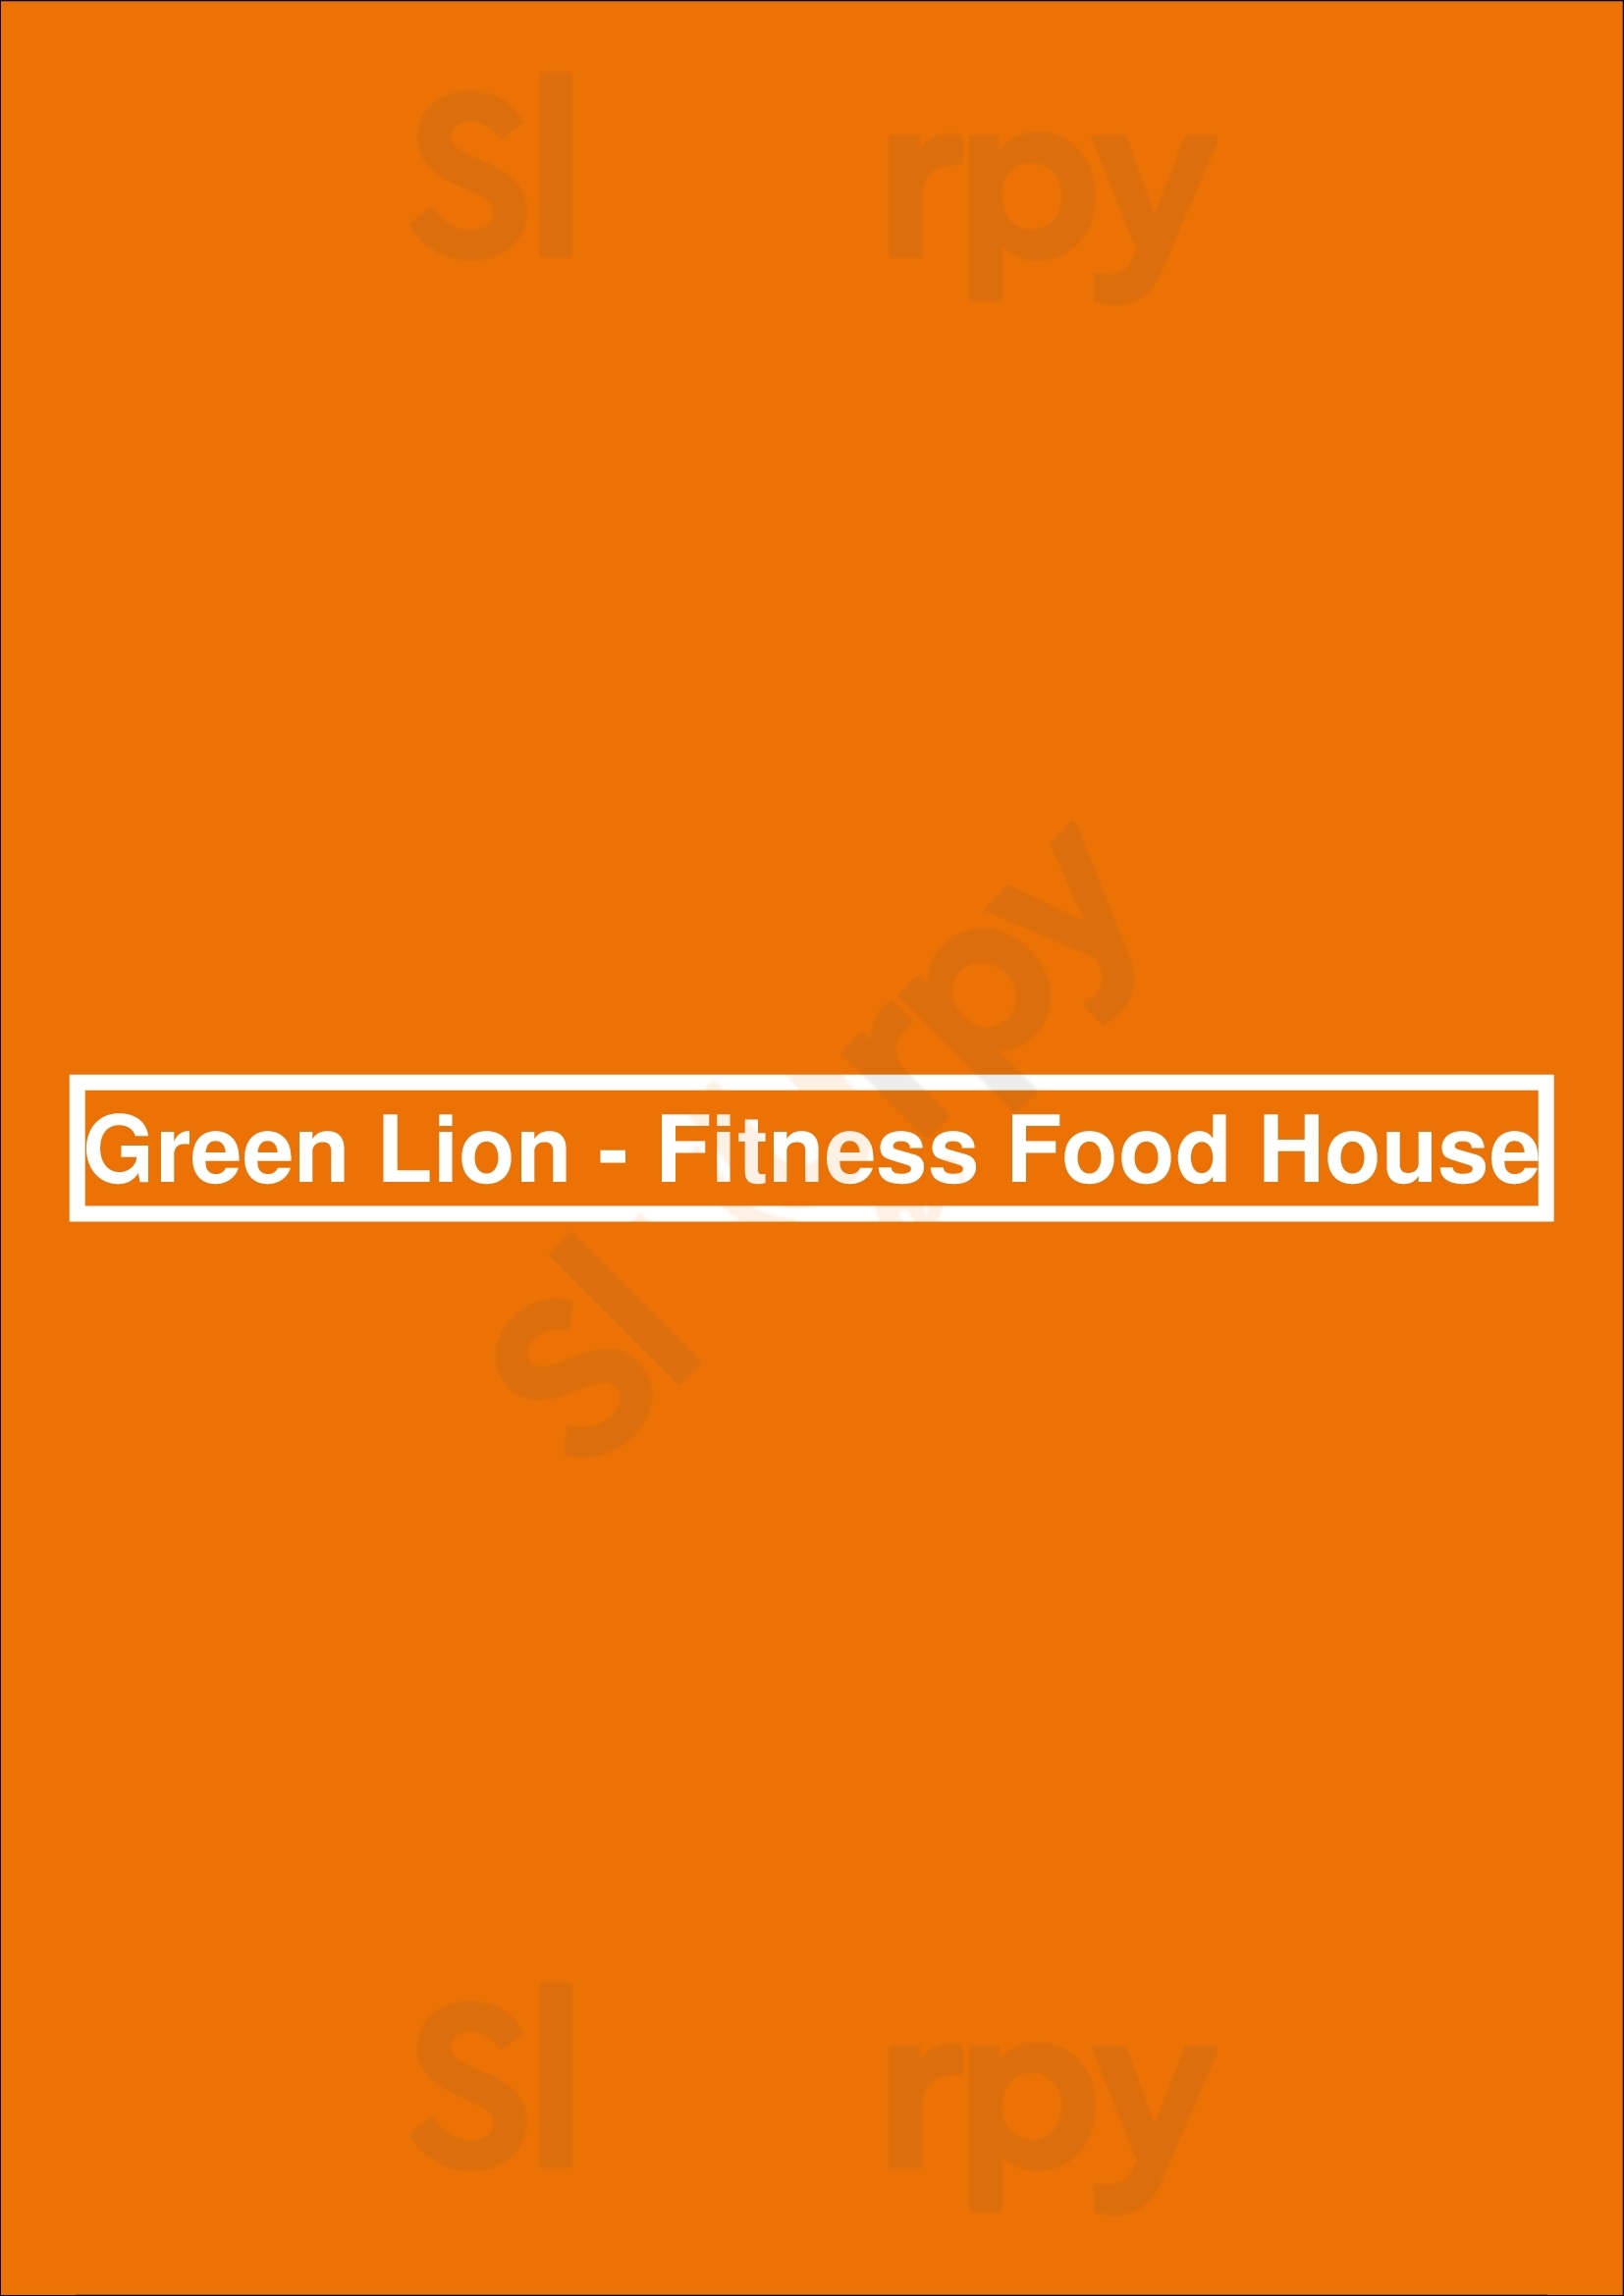 Green Lion - Fitness Food House Nürnberg Menu - 1